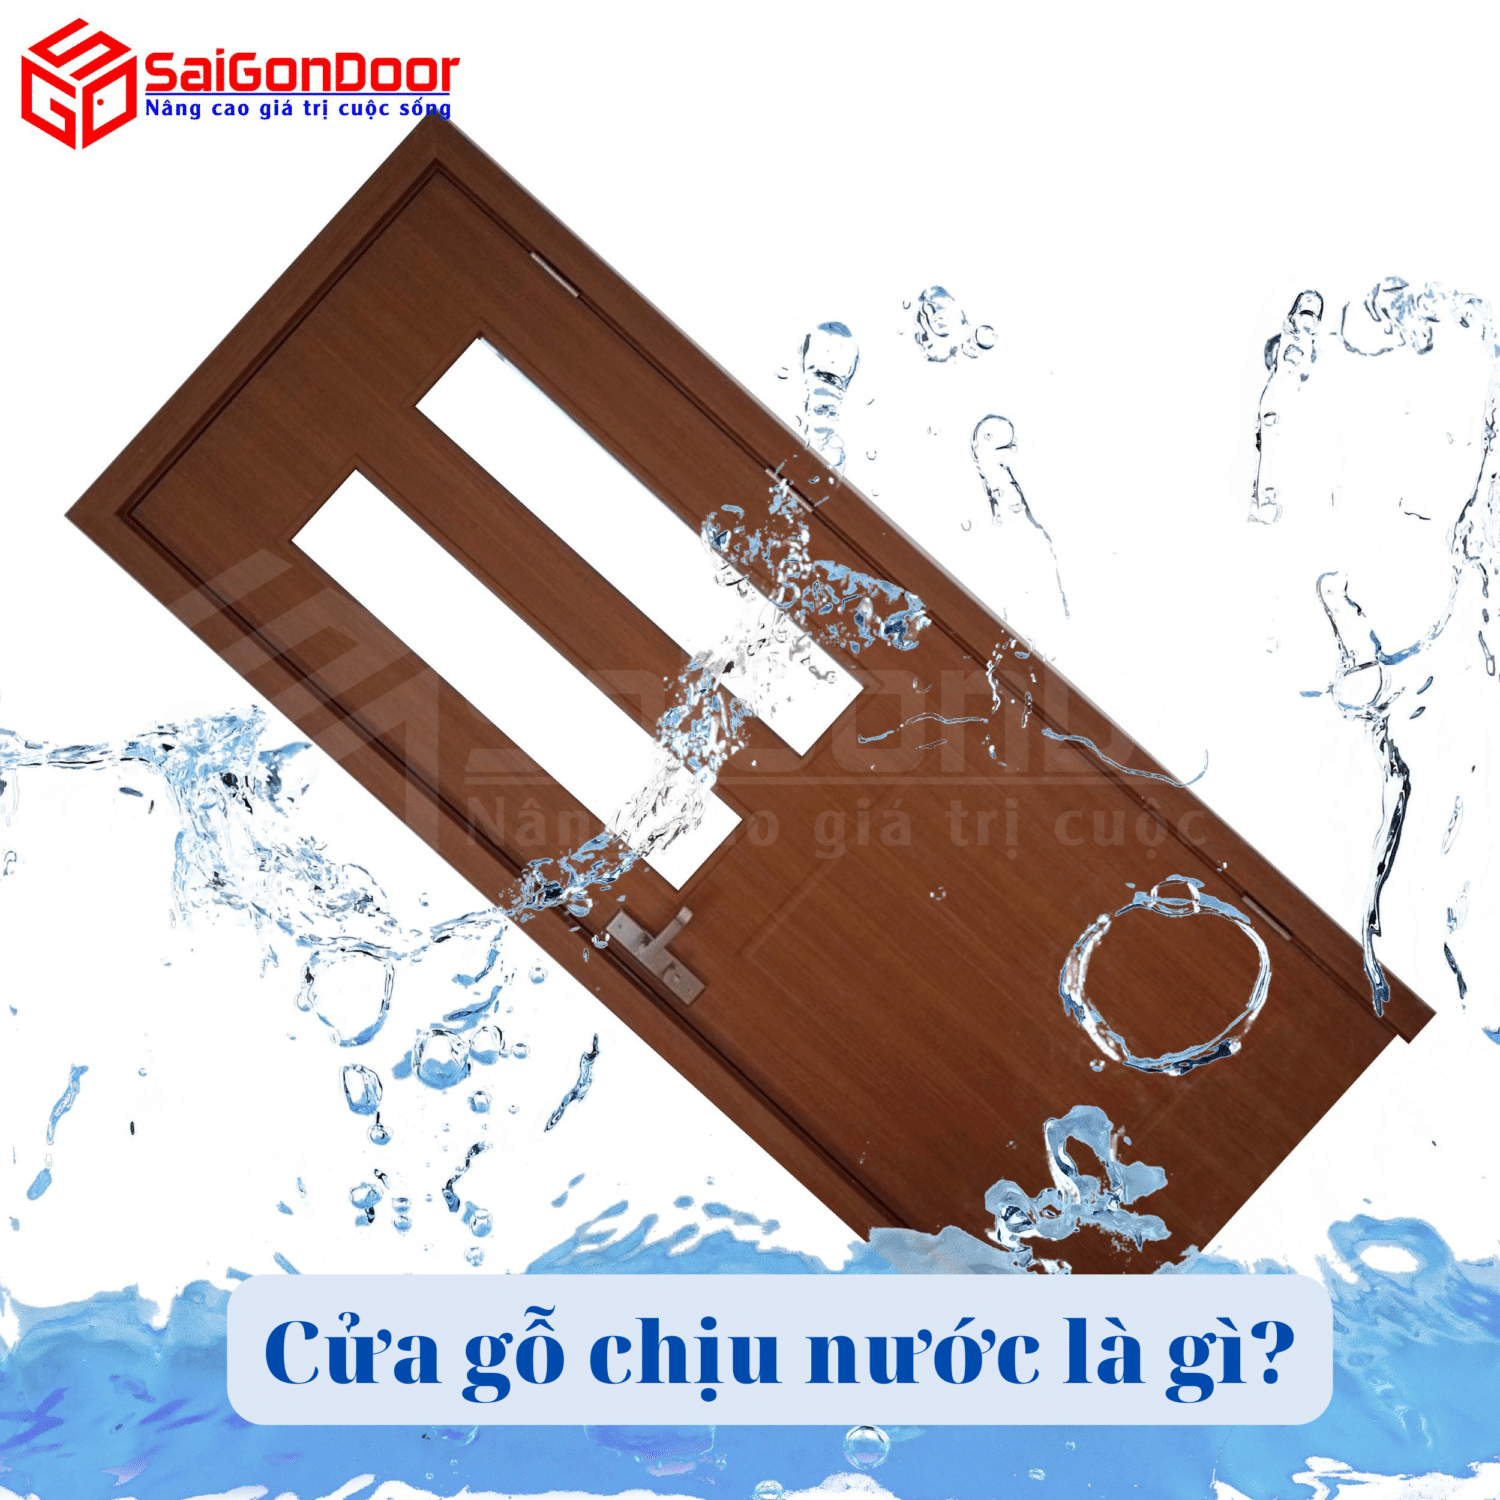 Cửa gỗ chịu nước là gì? Tác dụng không ngờ của cửa gỗ chịu nước 